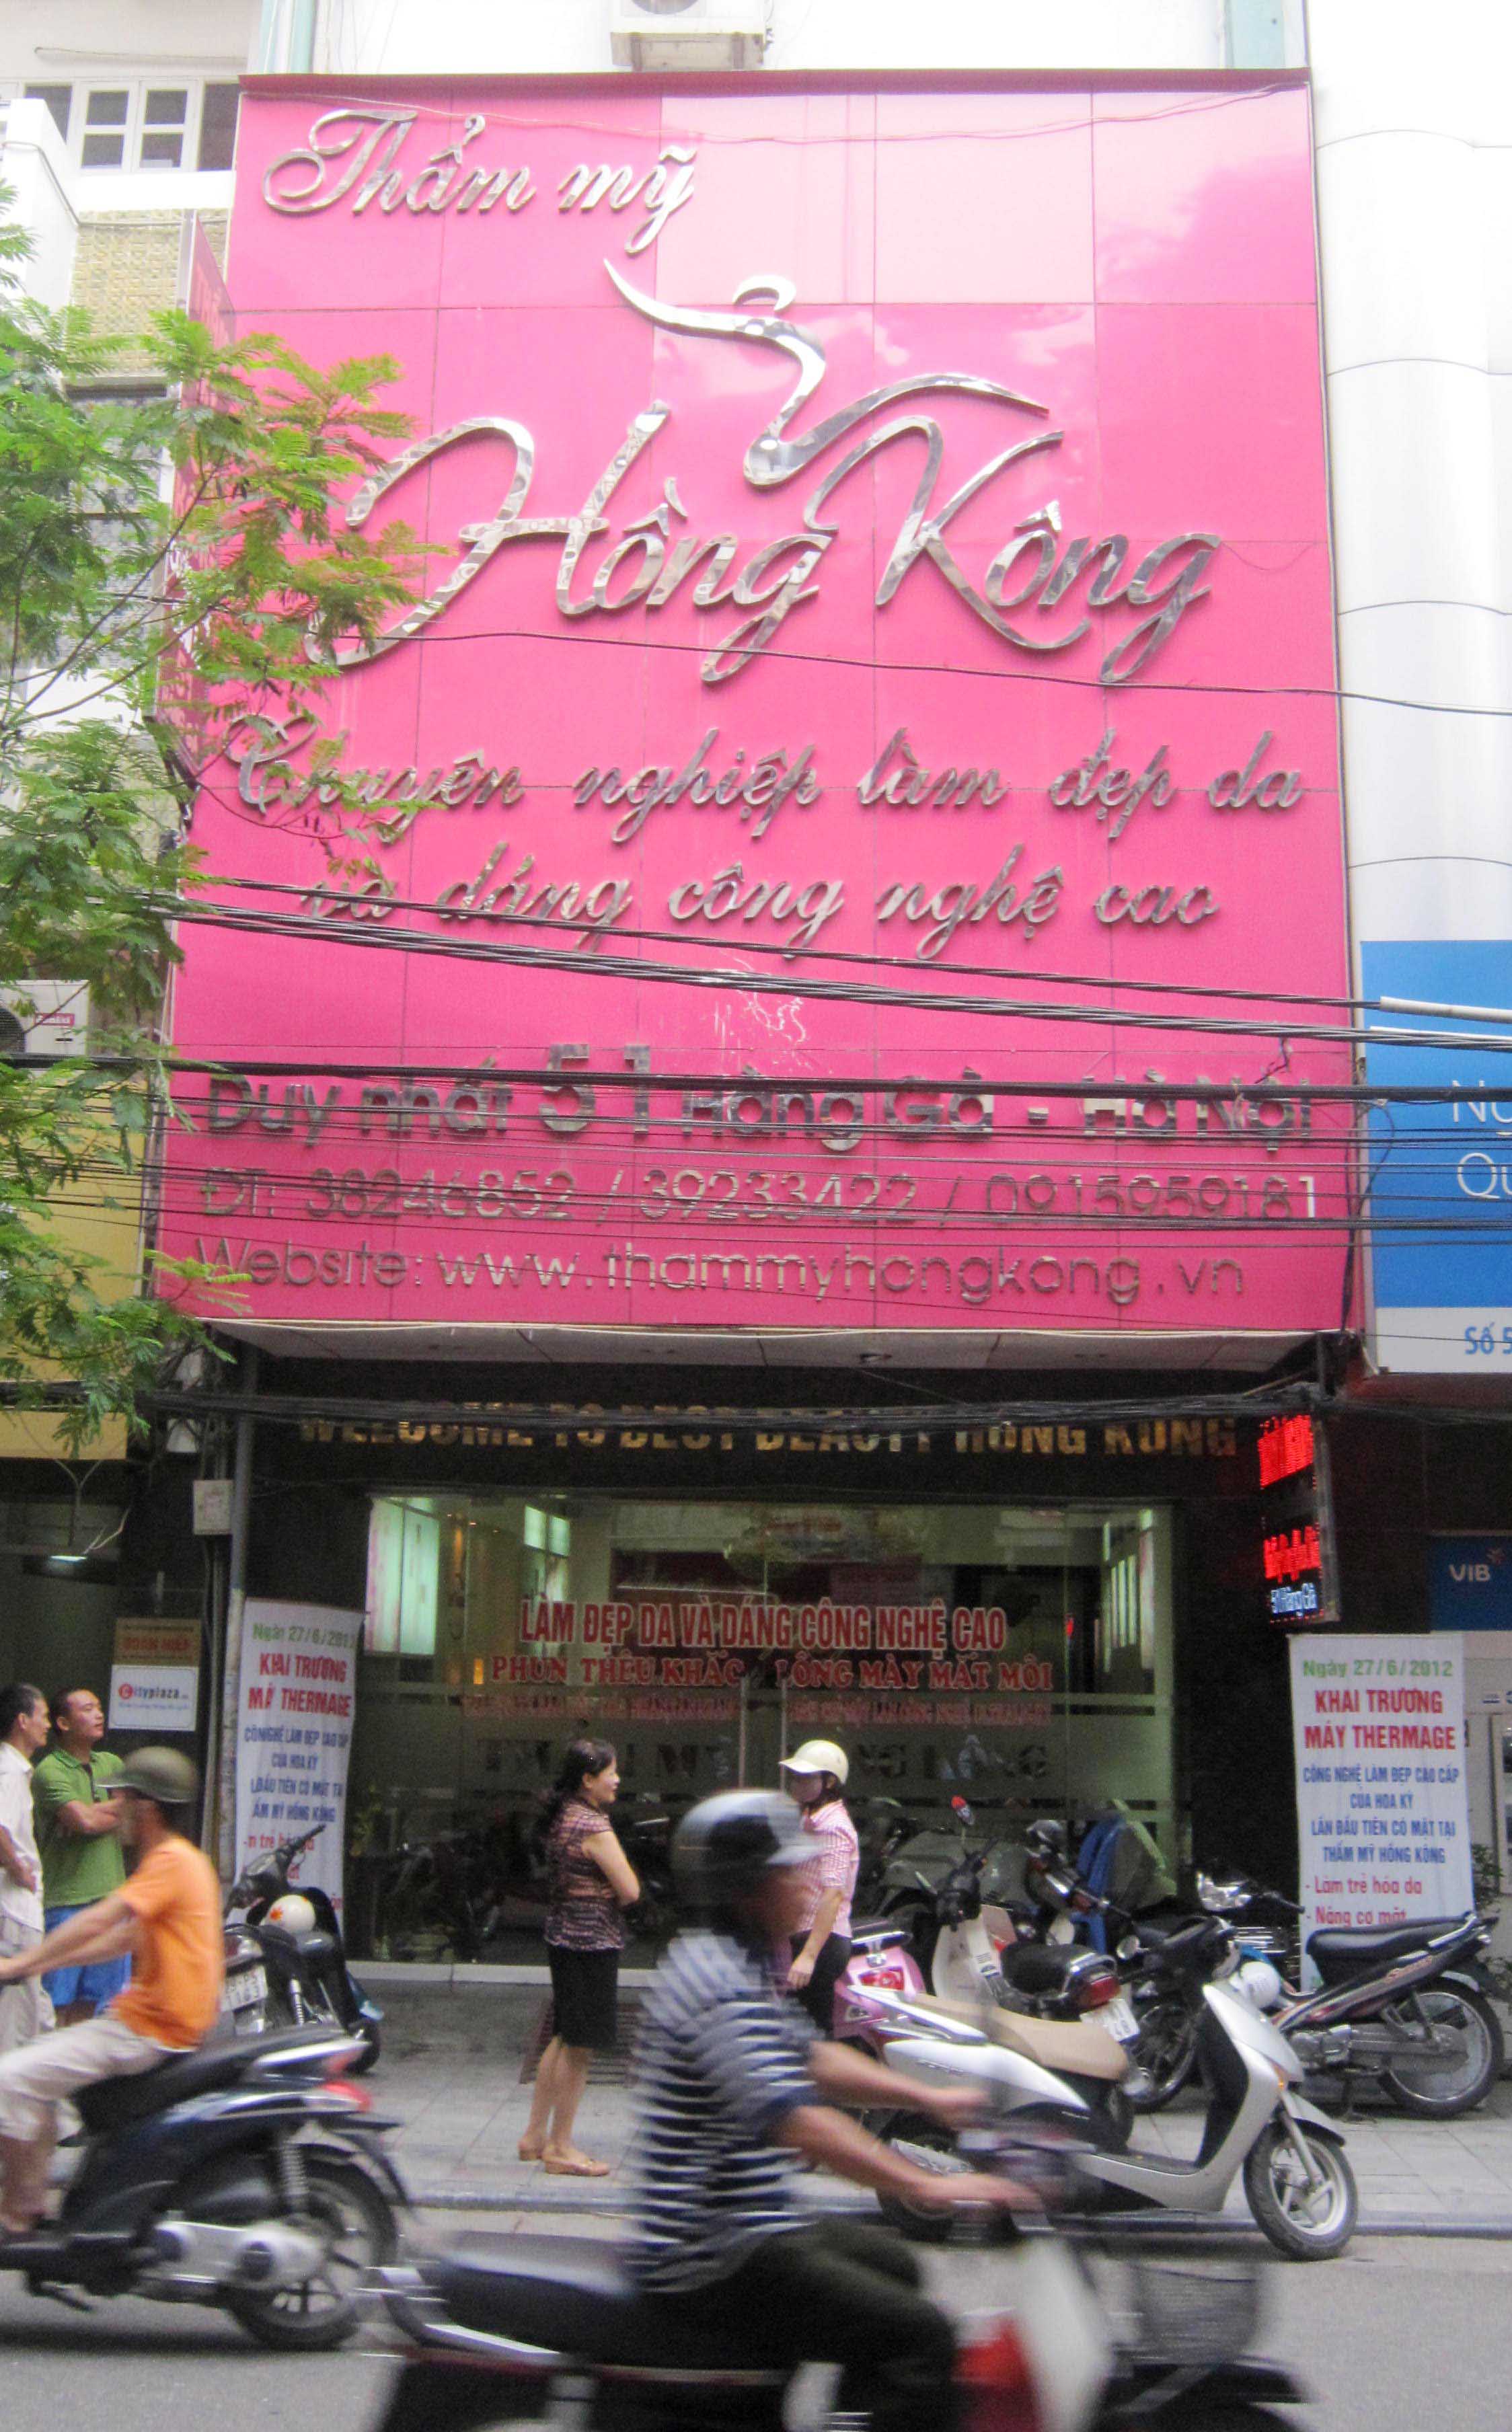 Thẩm mỹ Hong Kong - Công Ty Cổ Phần Công Nghệ Nam Phong